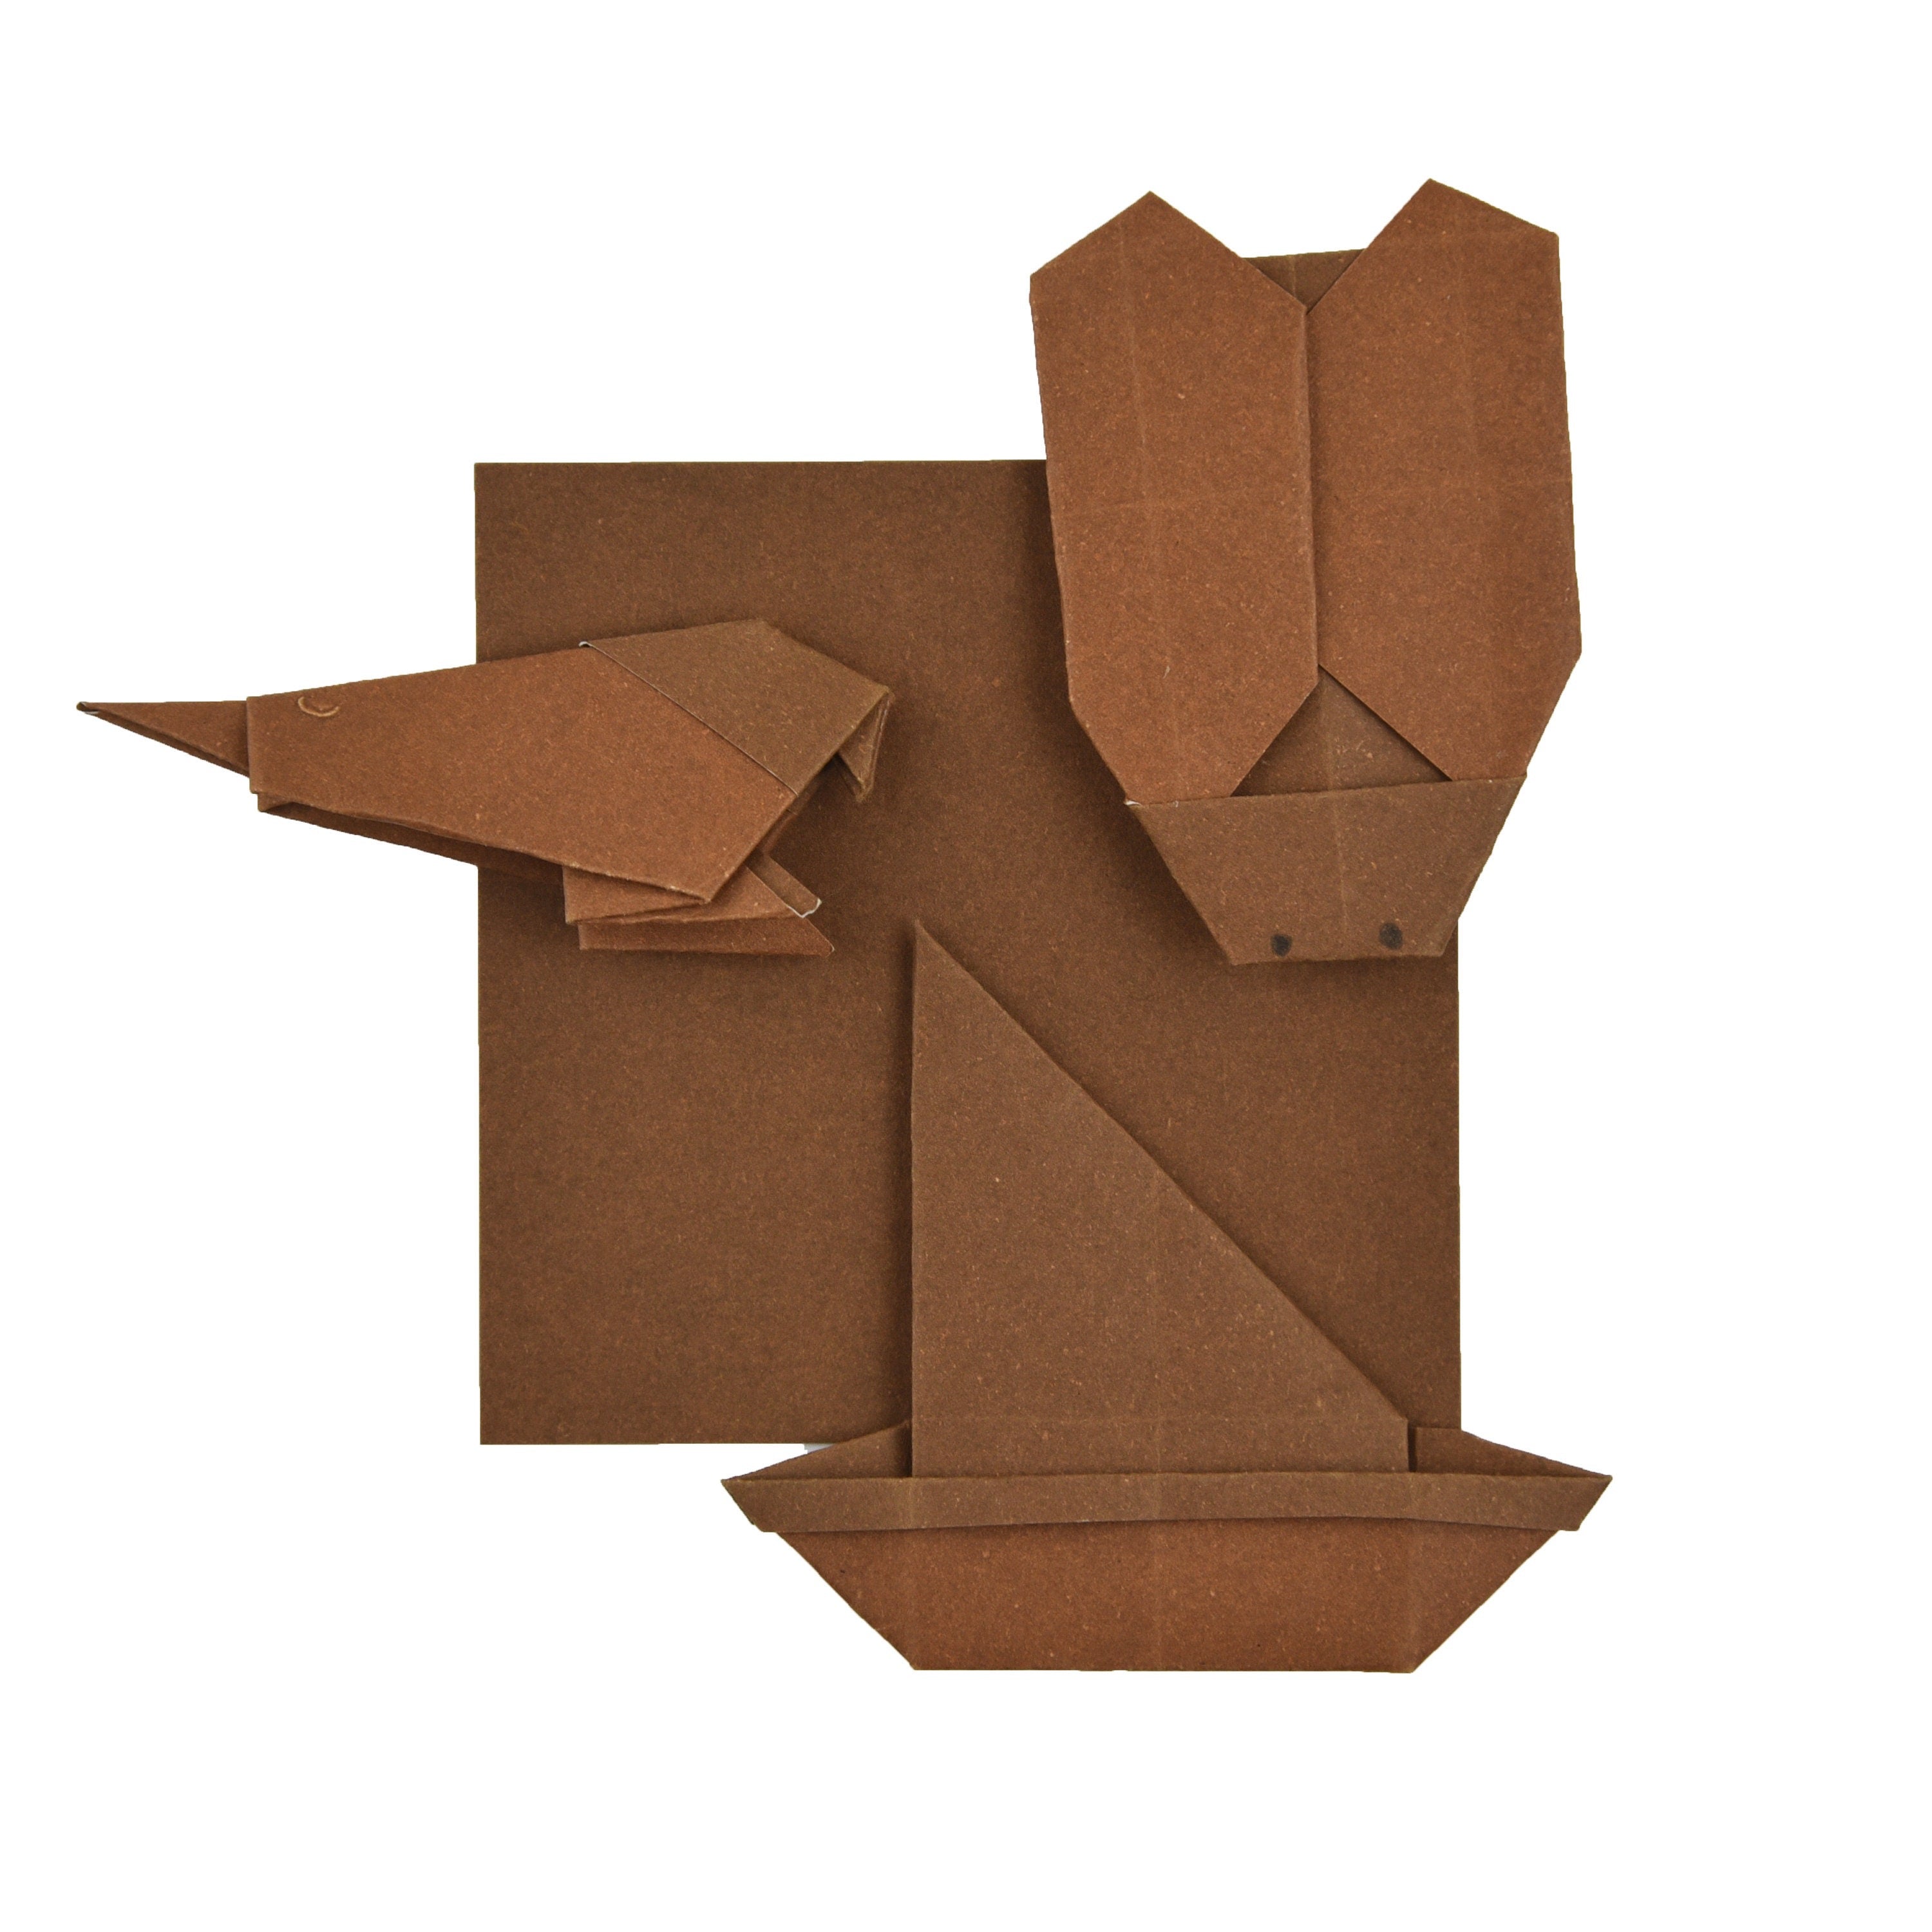 100 Hojas de Papel Origami Marrón - 6x6 pulgadas - Paquete de Papel Cuadrado para Plegar, Grullas de Origami y Decoración - S07